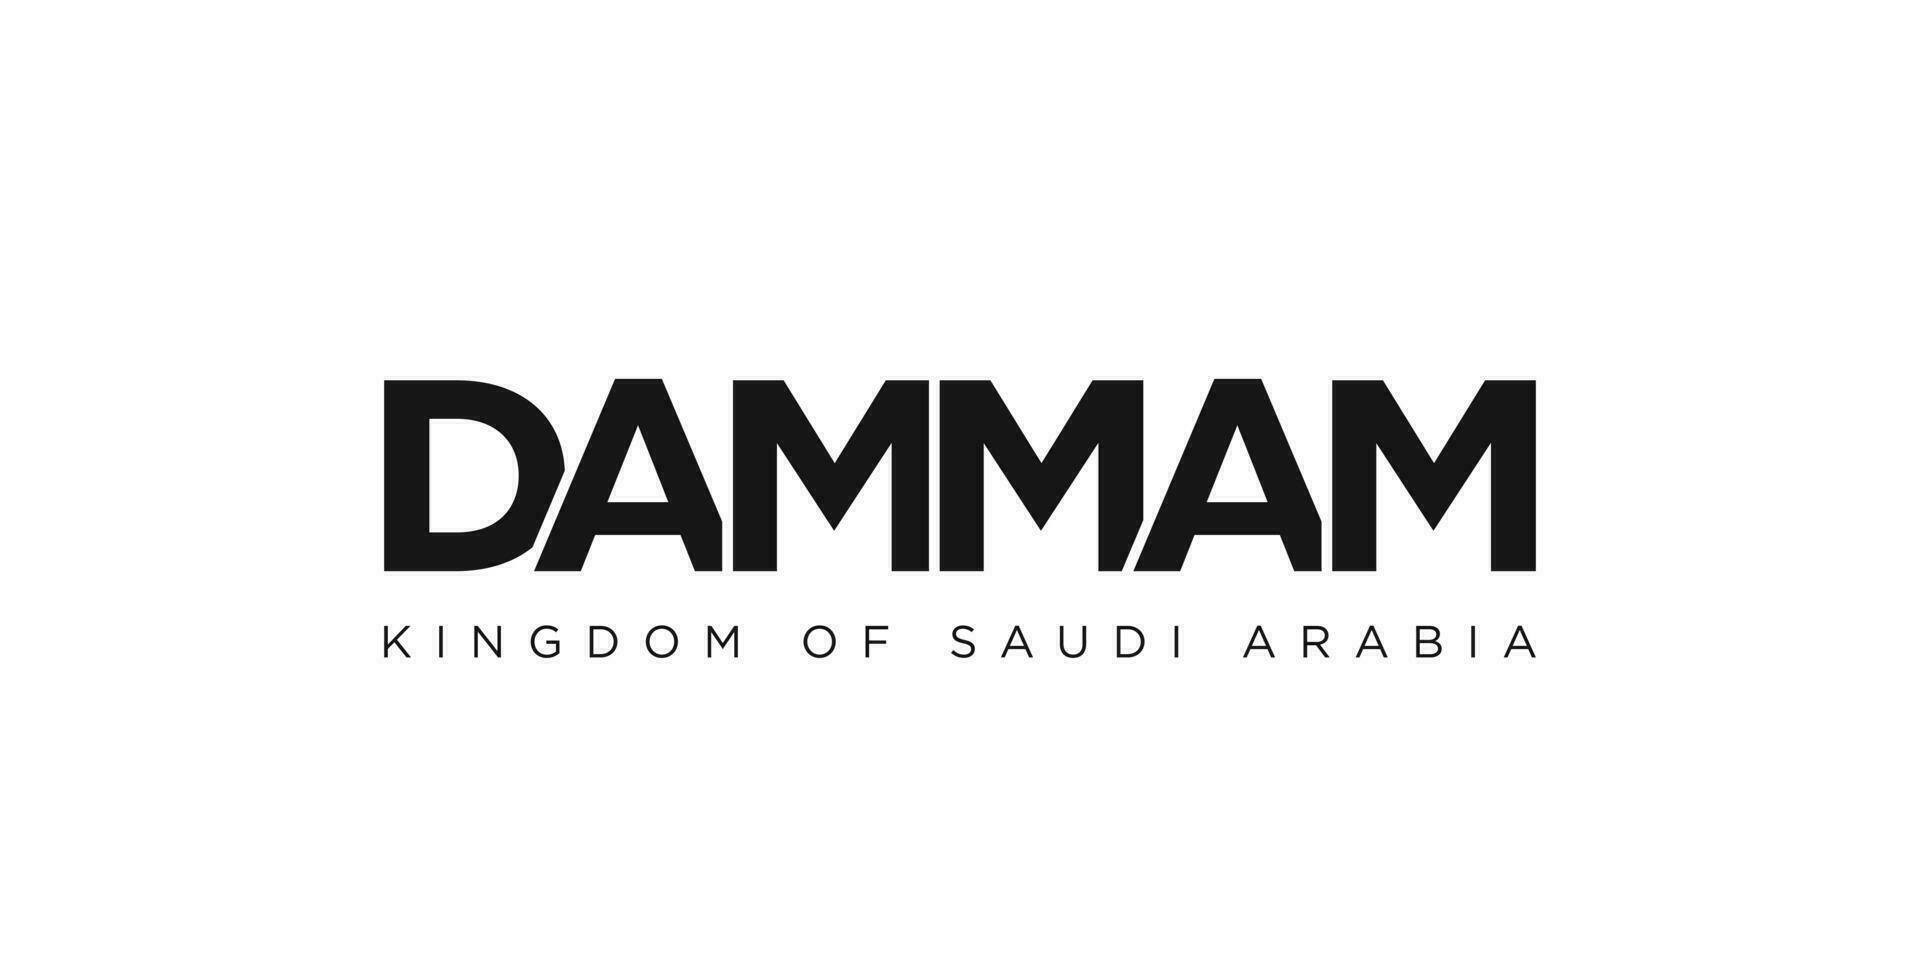 maldita sea en el saudi arabia emblema. el diseño caracteristicas un geométrico estilo, vector ilustración con negrita tipografía en un moderno fuente. el gráfico eslogan letras.